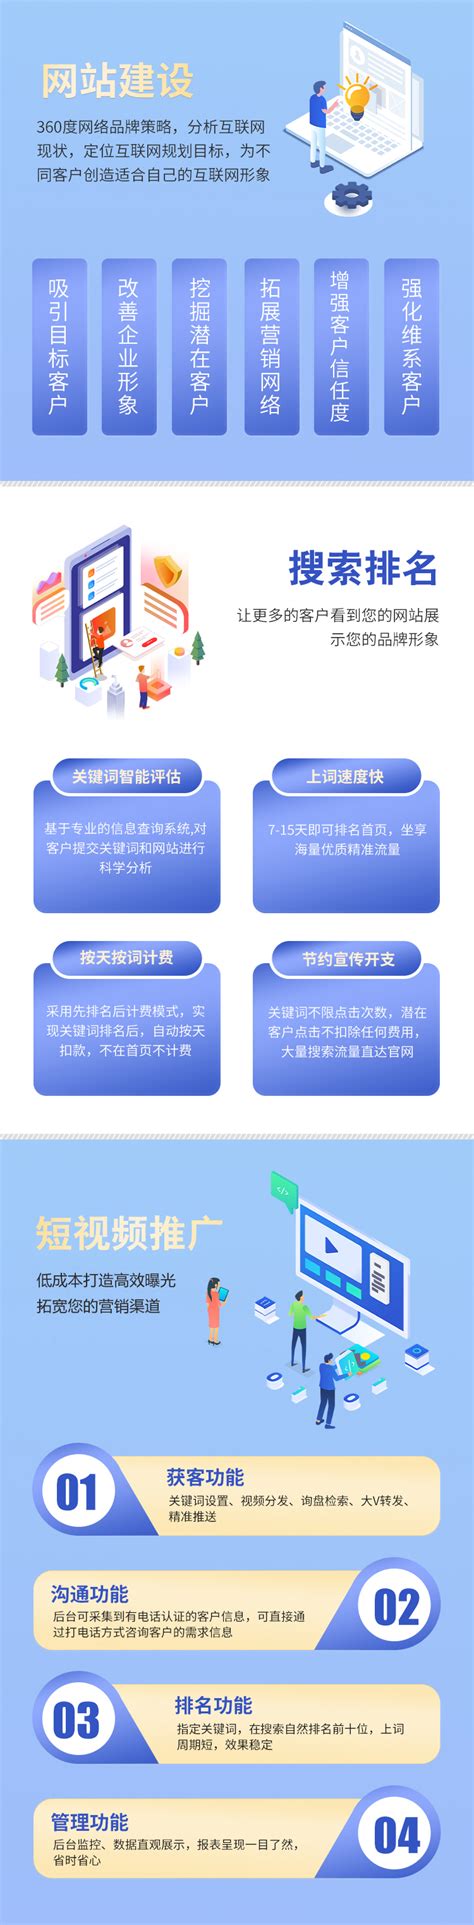 贵州网站开发公司推荐